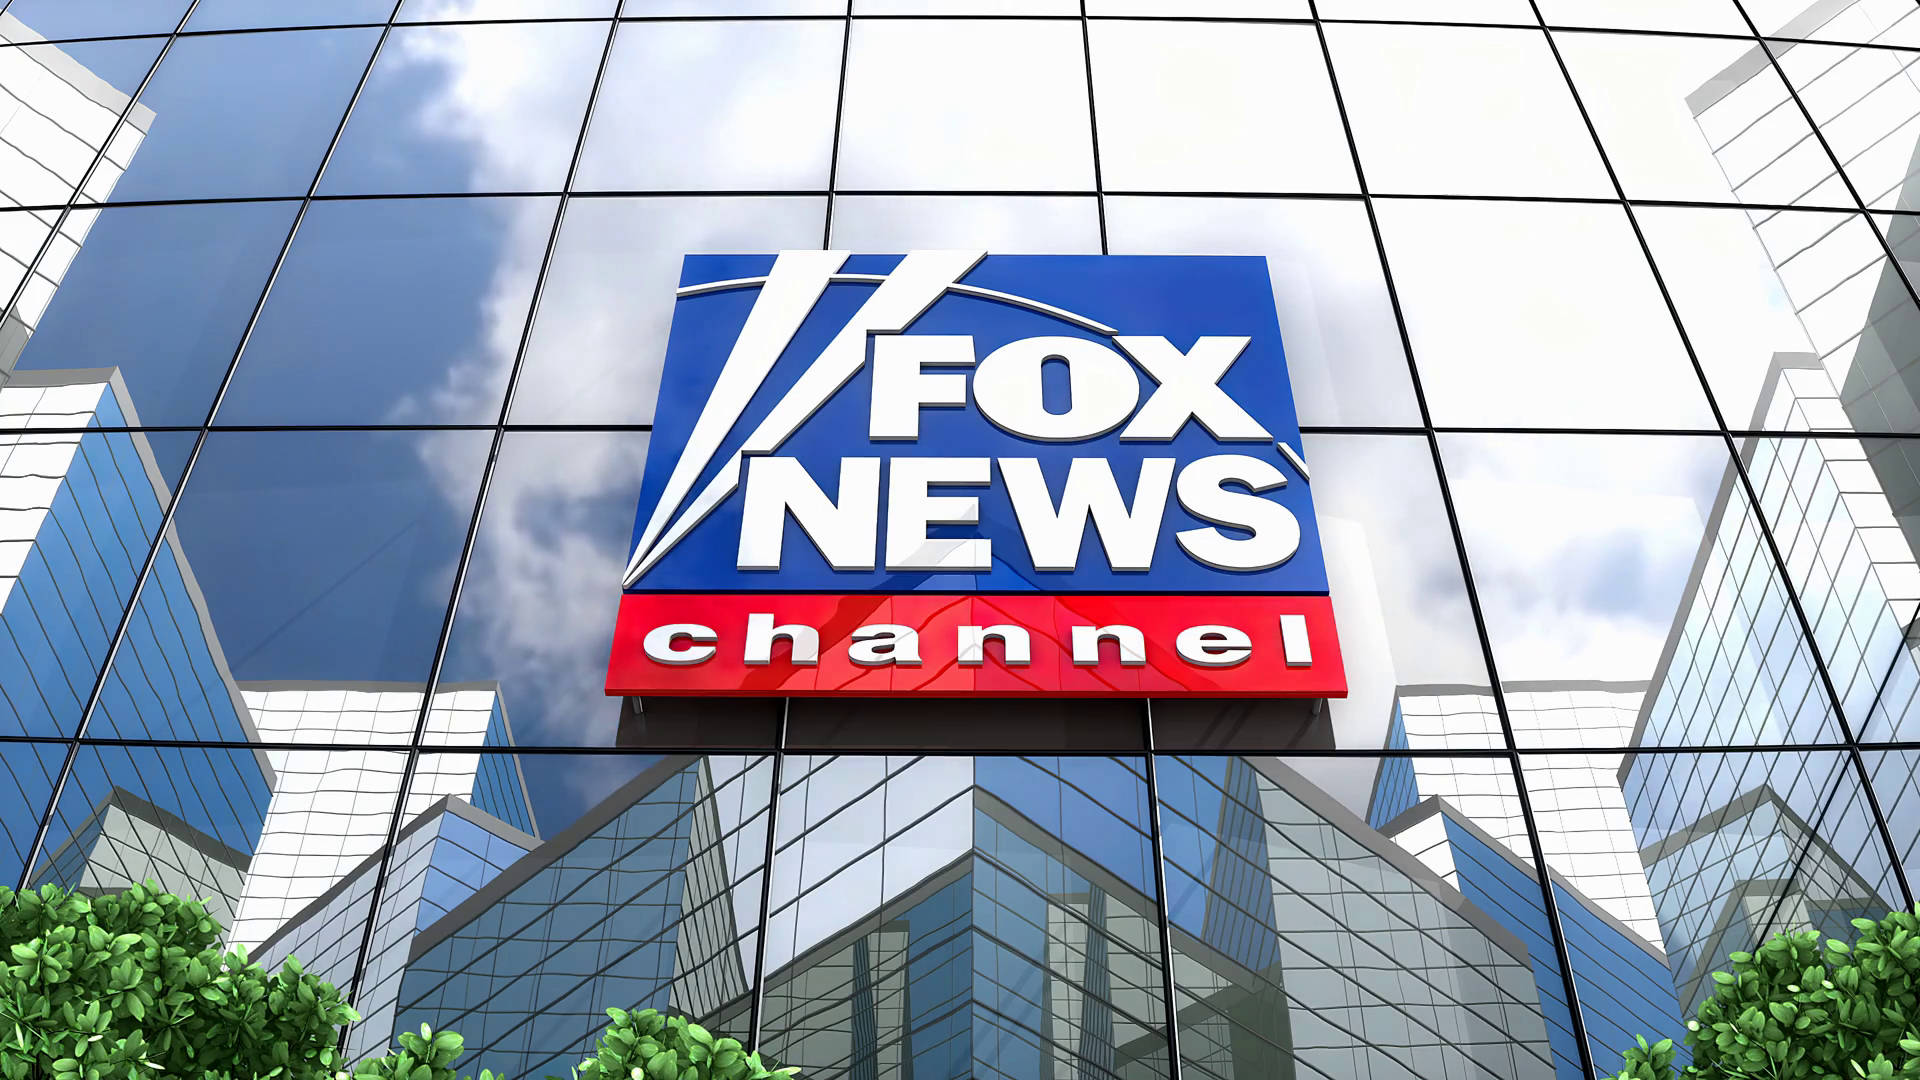 Papelde Parede Para Computador Ou Celular Do Canal De Notícias Fox News. Papel de Parede